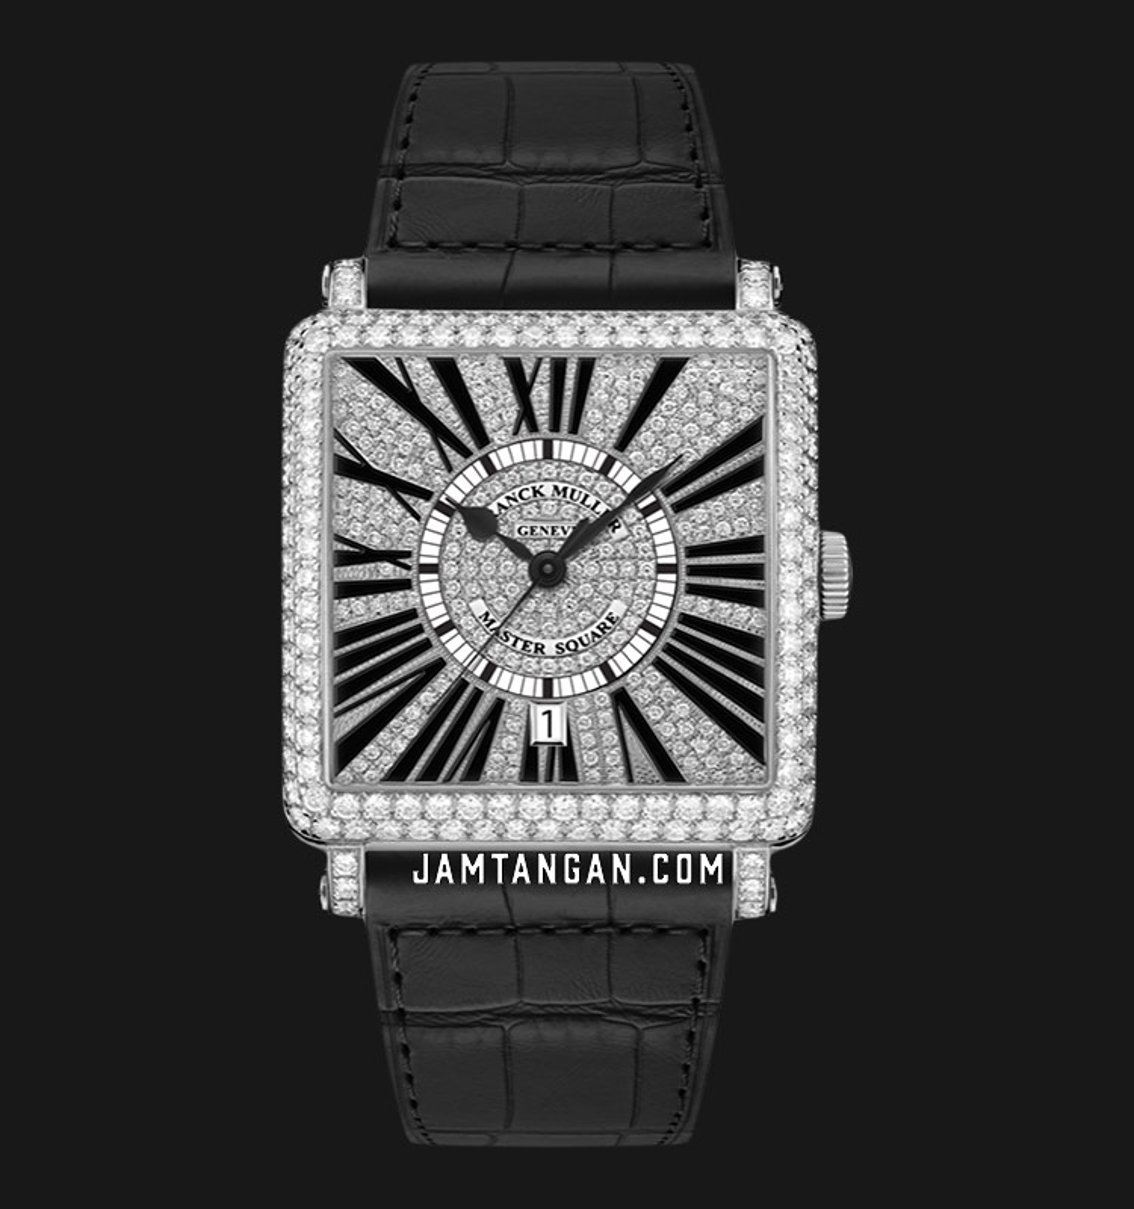 Koleksi Swiss watch mewah dari Franck Muller dengan square case 